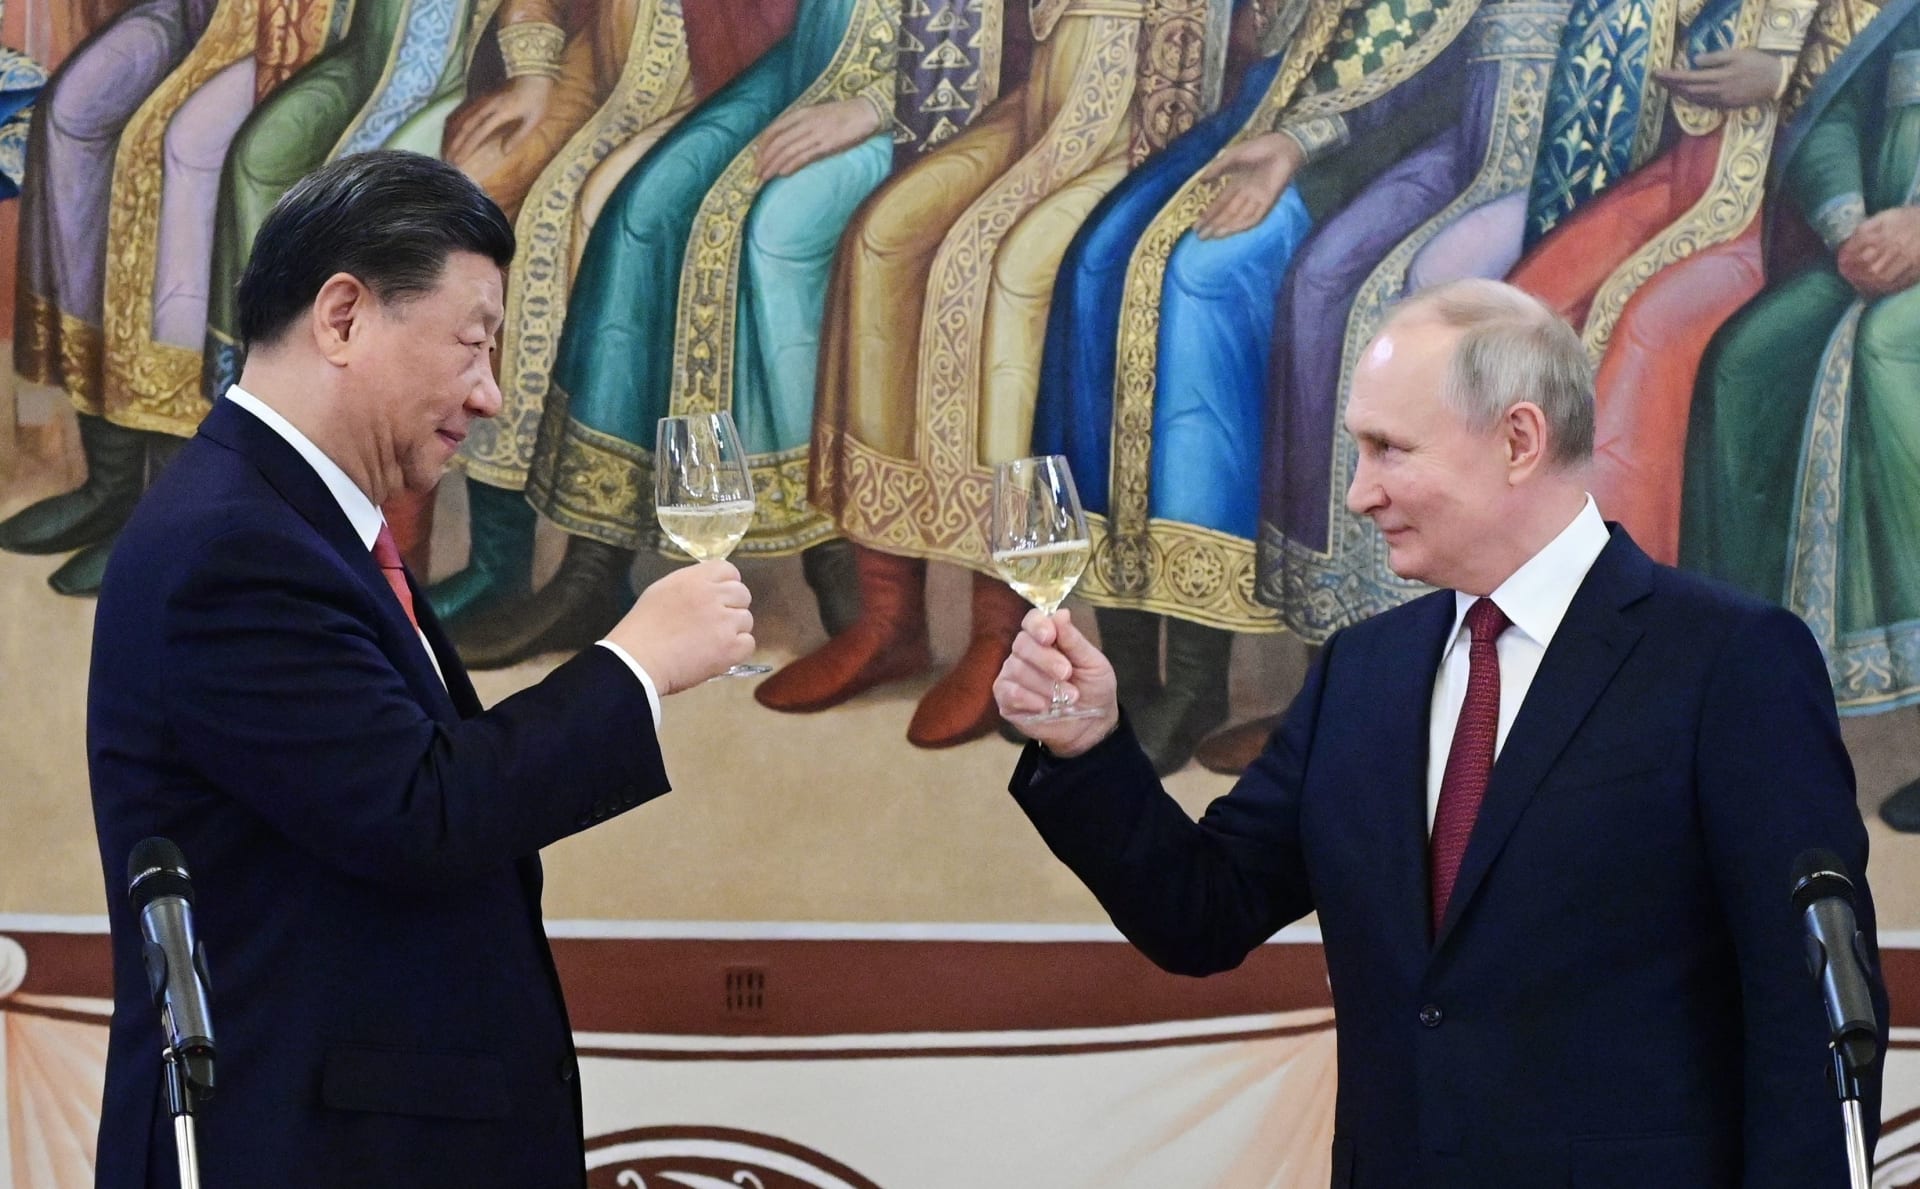 تحليل: 6 سنوات أخرى من حكم بوتين تثير قلق العديد من البلدان.. ولكن ليس الصين